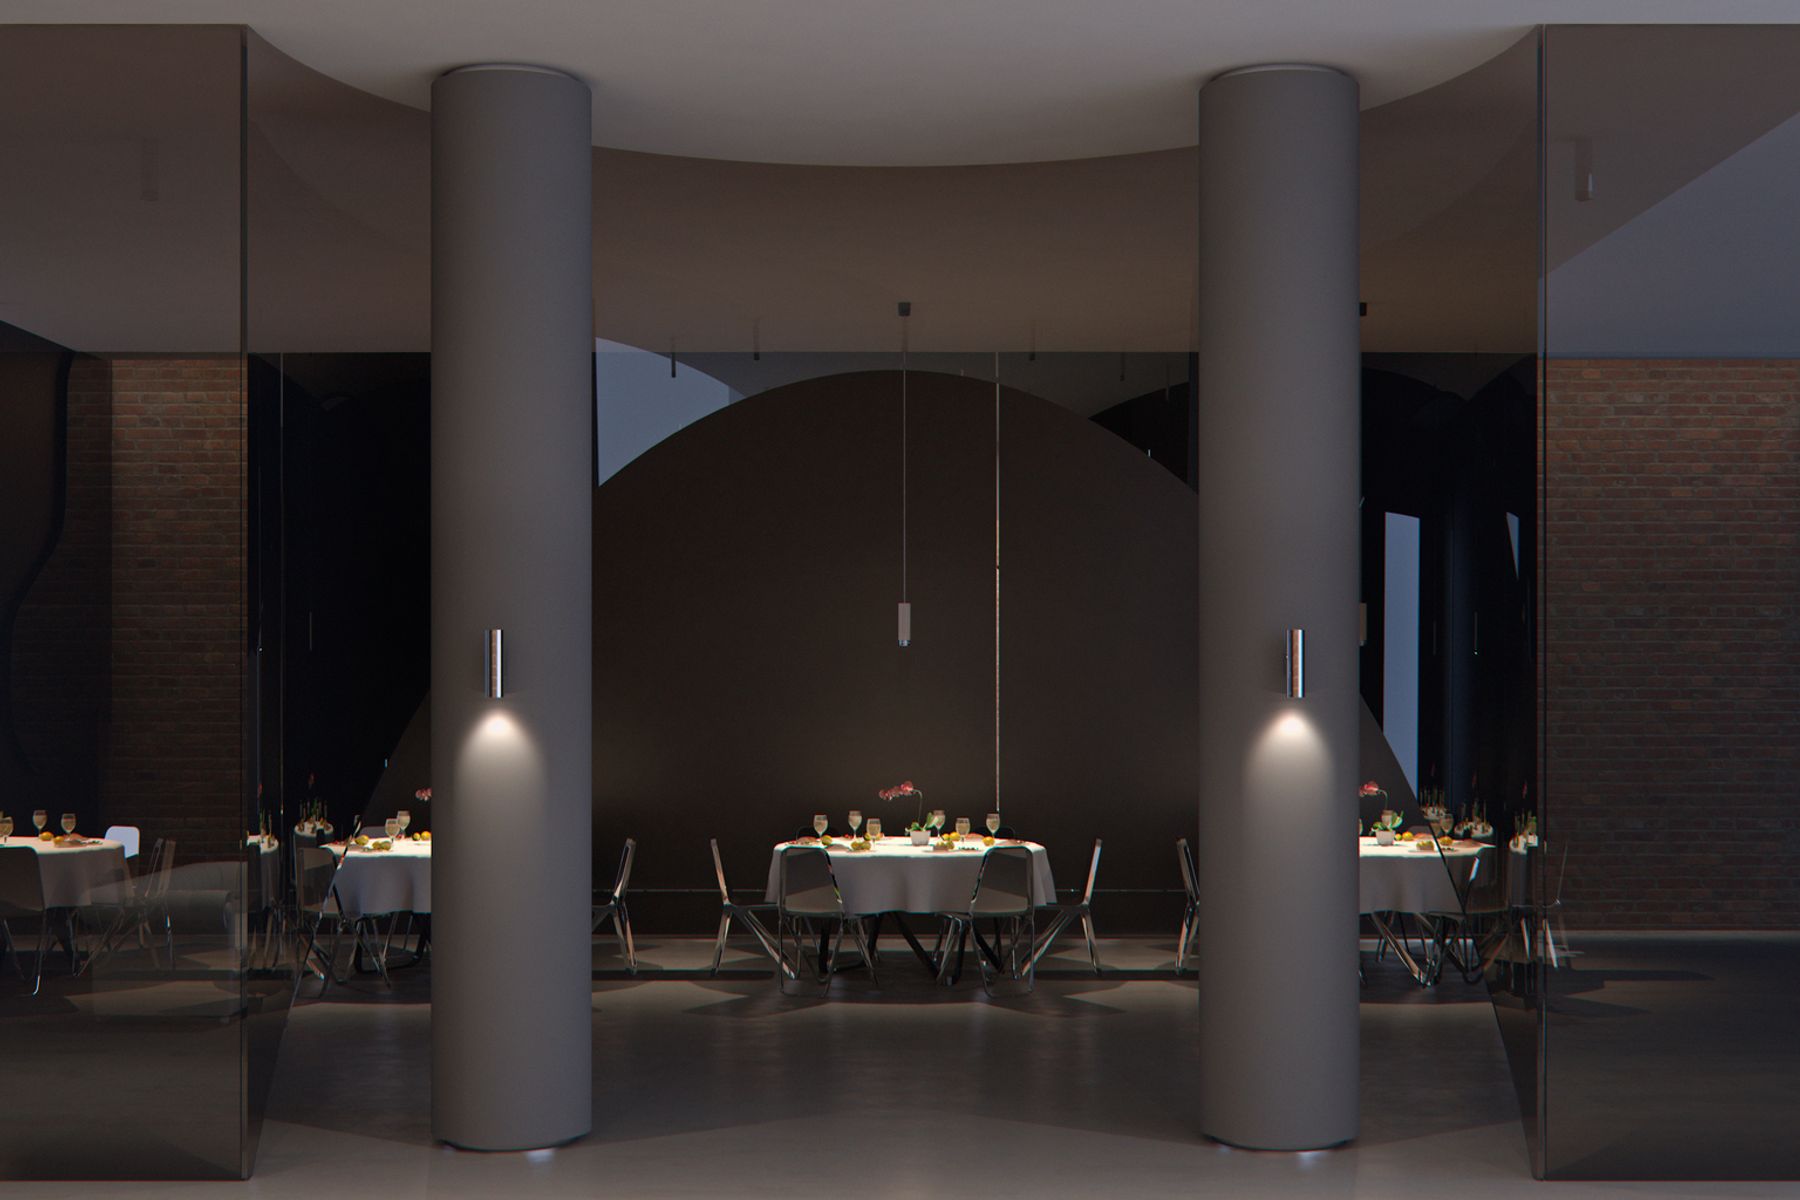 Las luminarias de pared Starpoint convencen por su diseño refinado y su luz atmosférica, que crea un ritmo visual y enfatiza los elementos arquitectónicos verticales.